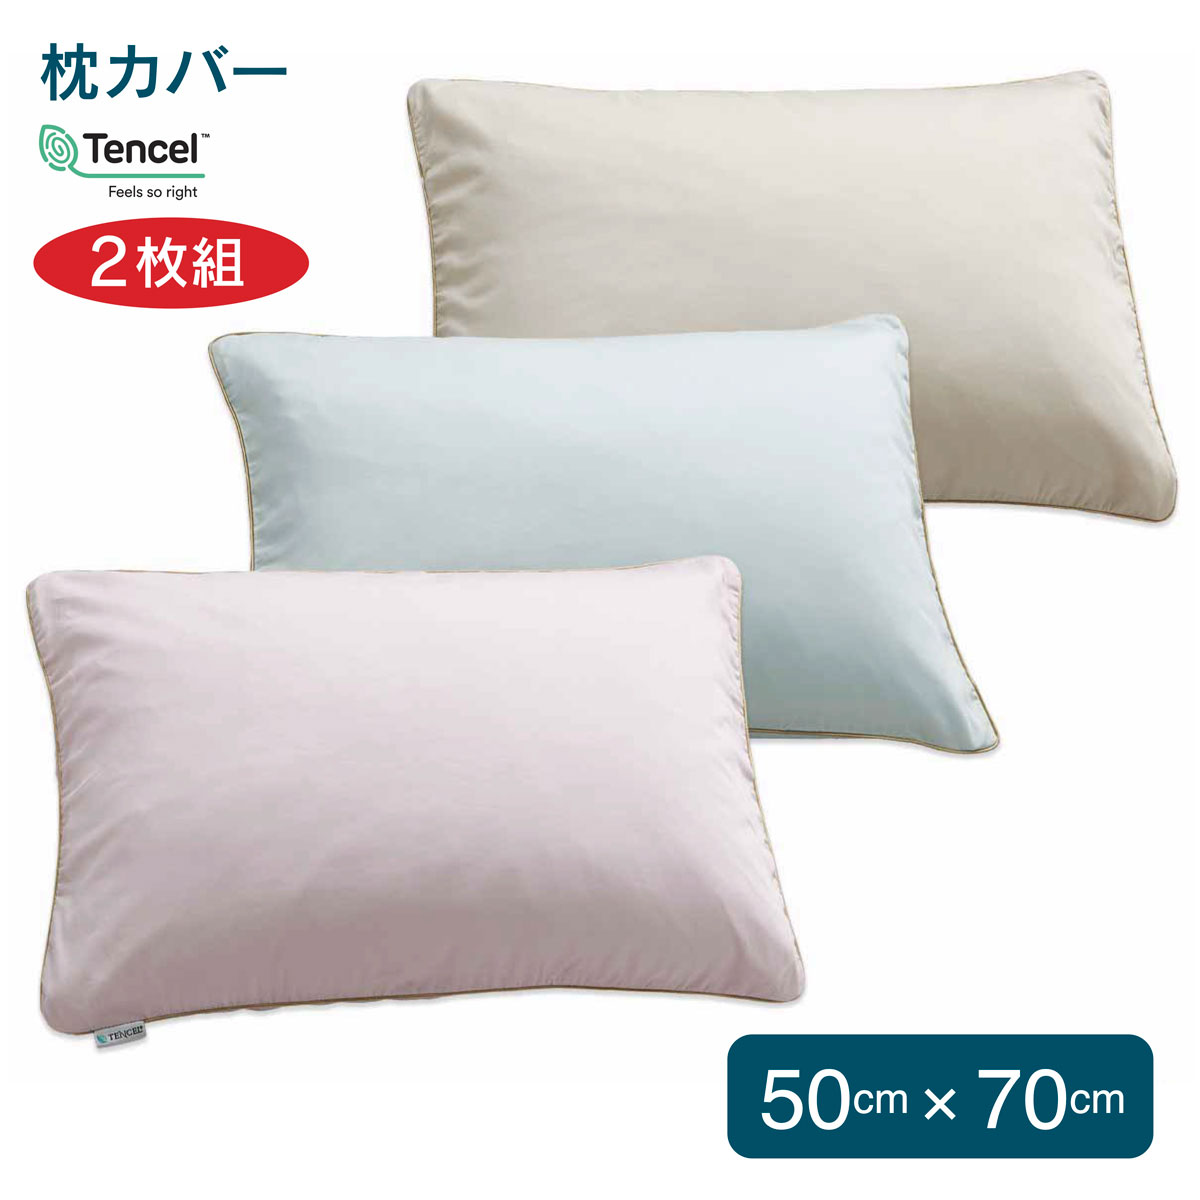 【楽天市場】フォスフレイクス 枕カバー 同色3枚セット 50x70cm 